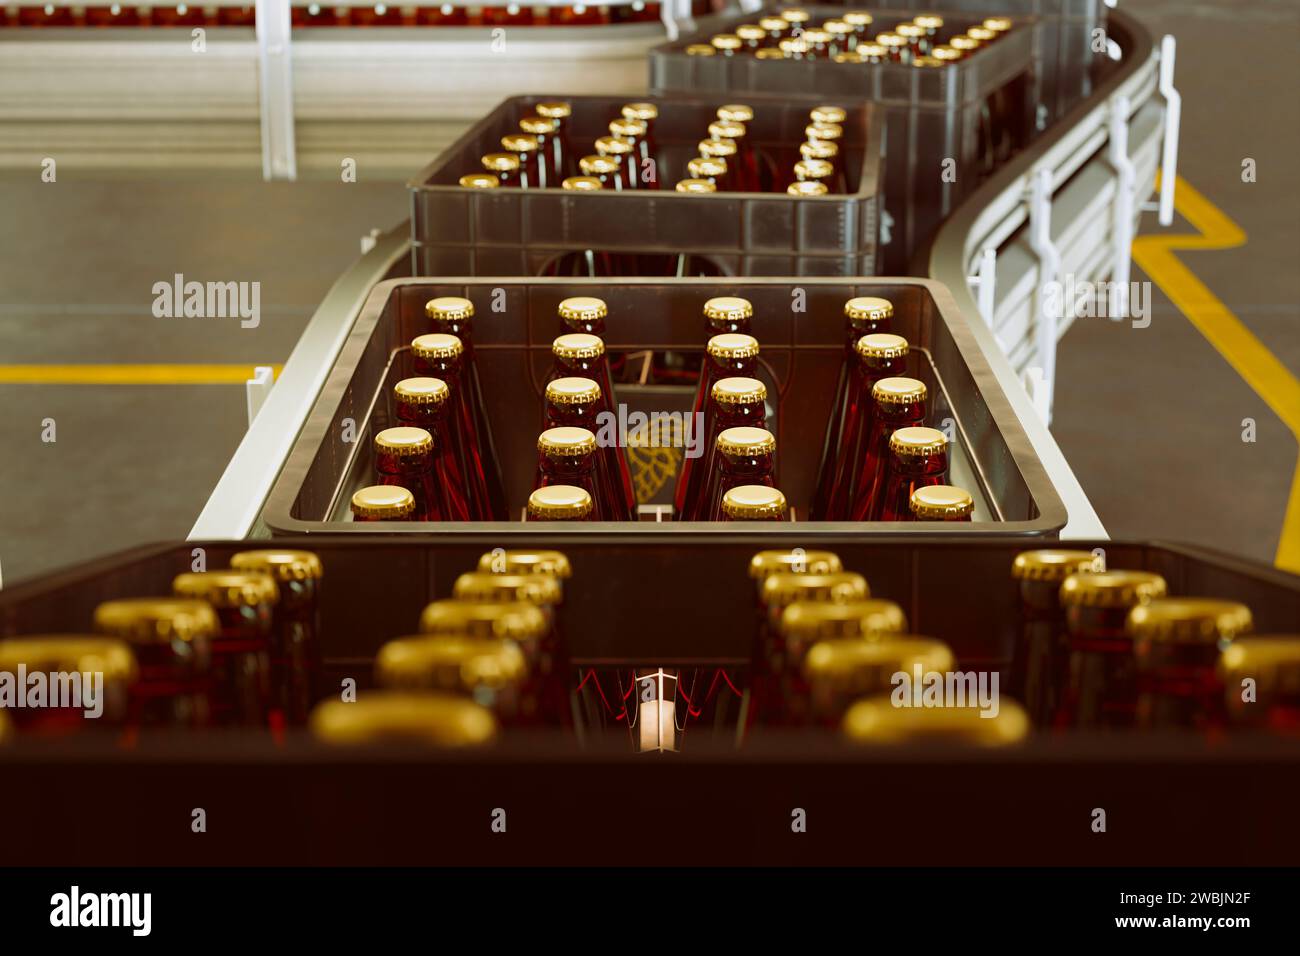 Ein Einblick in eine geschäftige Bierabfüllfabrik mit einem modernen Förderbandsystem, das mit versiegelten, bernsteinfarbenen Bierflaschen ausgestattet ist, die für den Vertrieb bereit sind Stockfoto